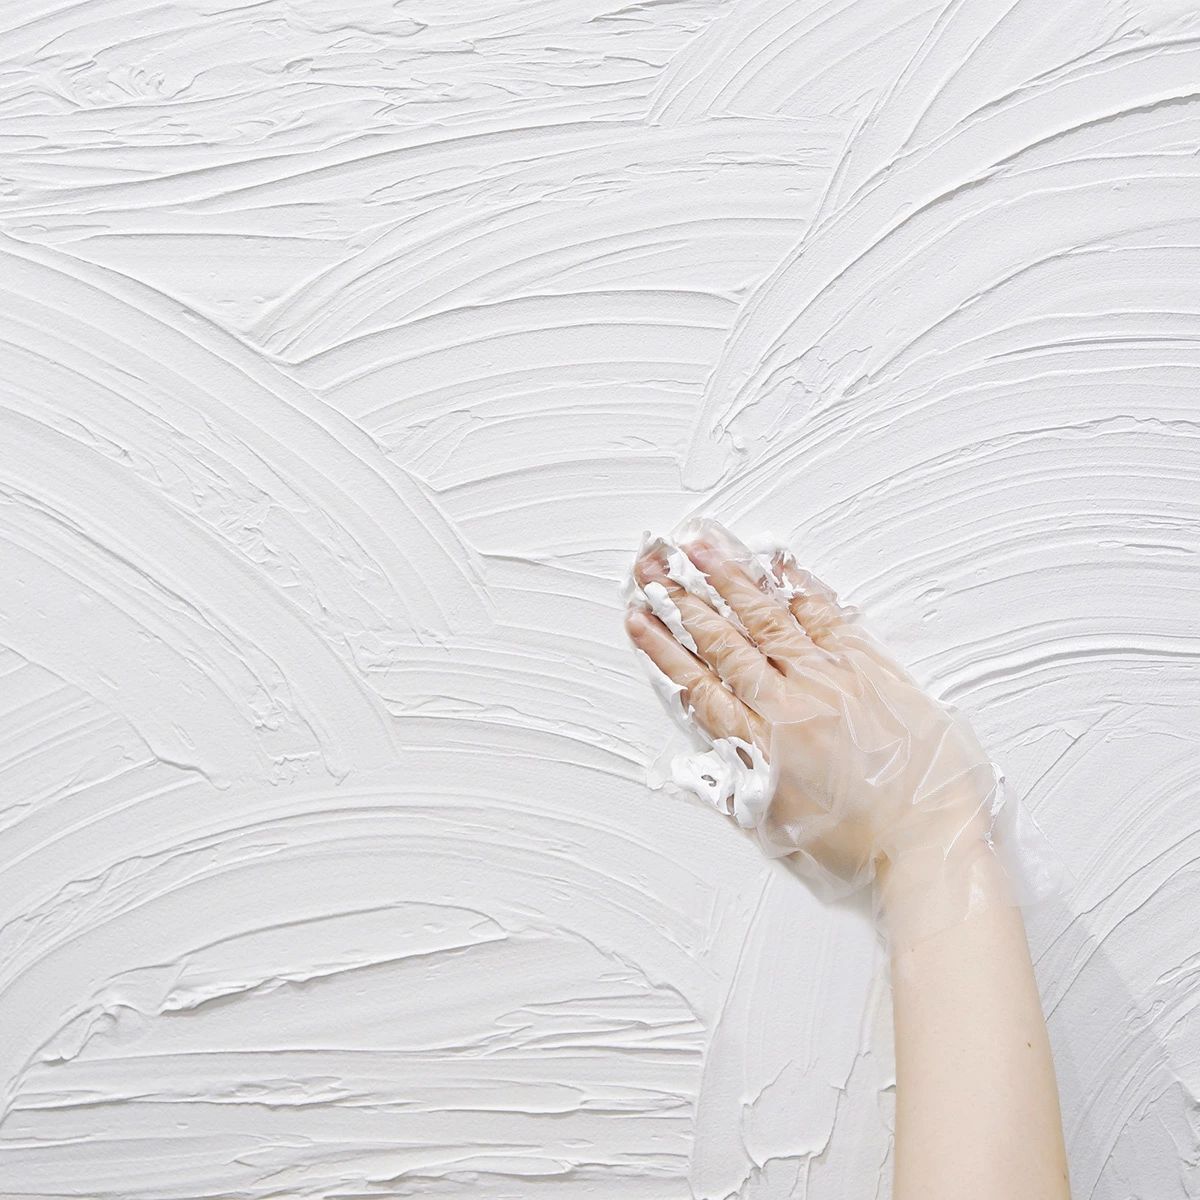 Nuri-Deco-Wall（2L） ホワイト しっくい風 塗料 水性塗料 屋内外 ツヤ消し ...